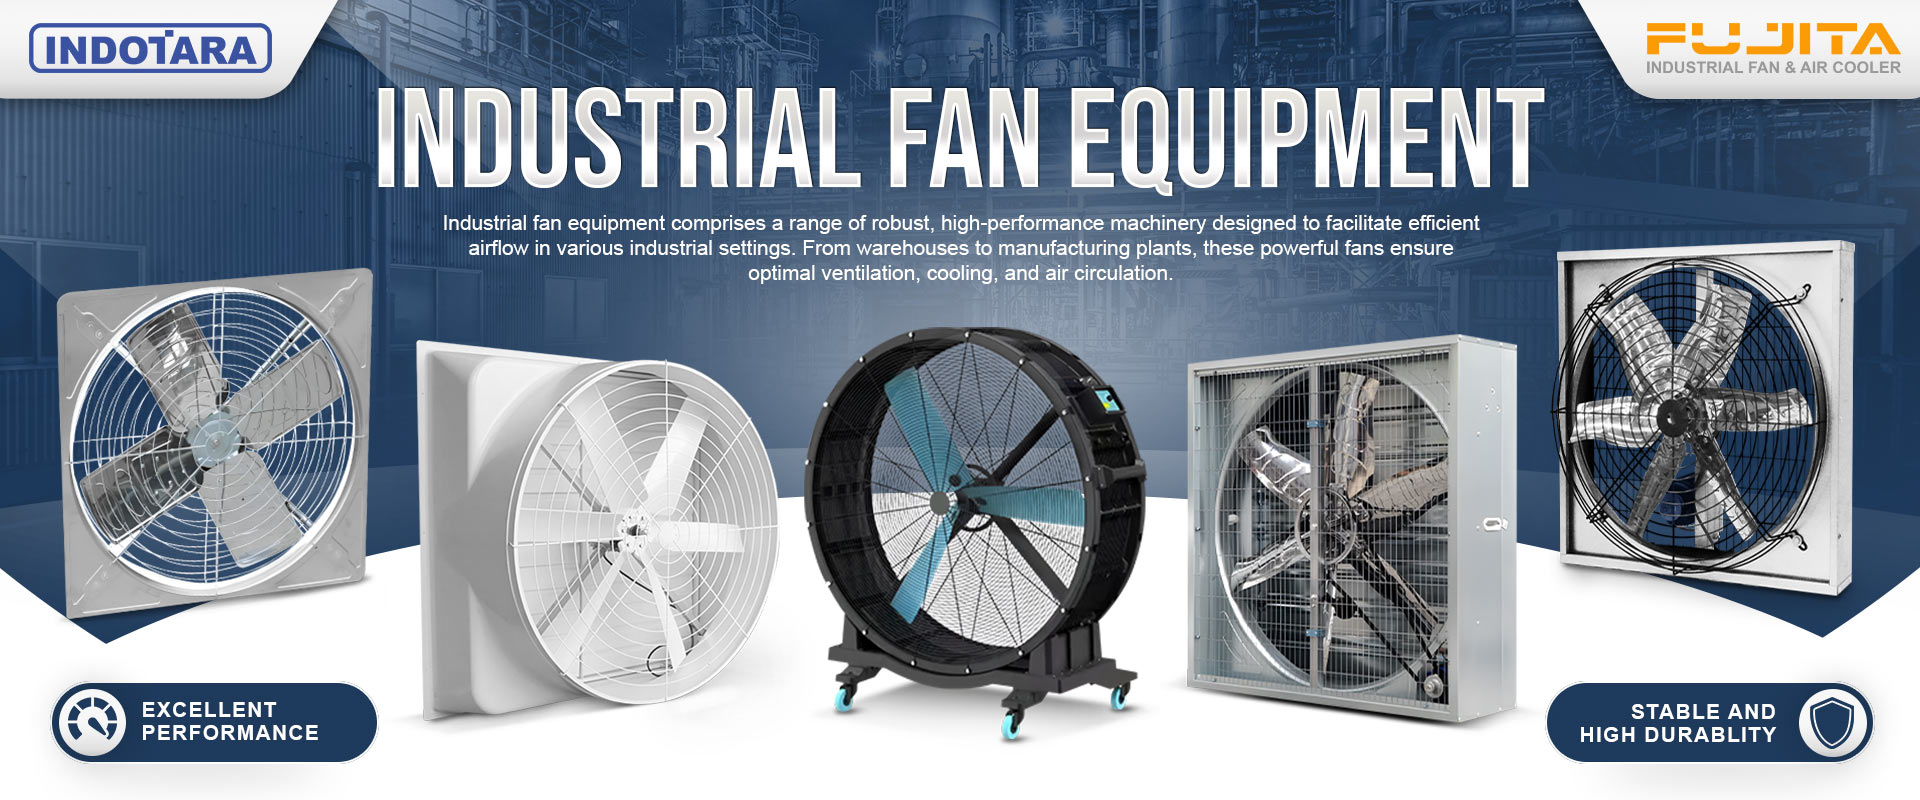 Jual Fujita Industrial Fan & Air Cooler Berkualitas